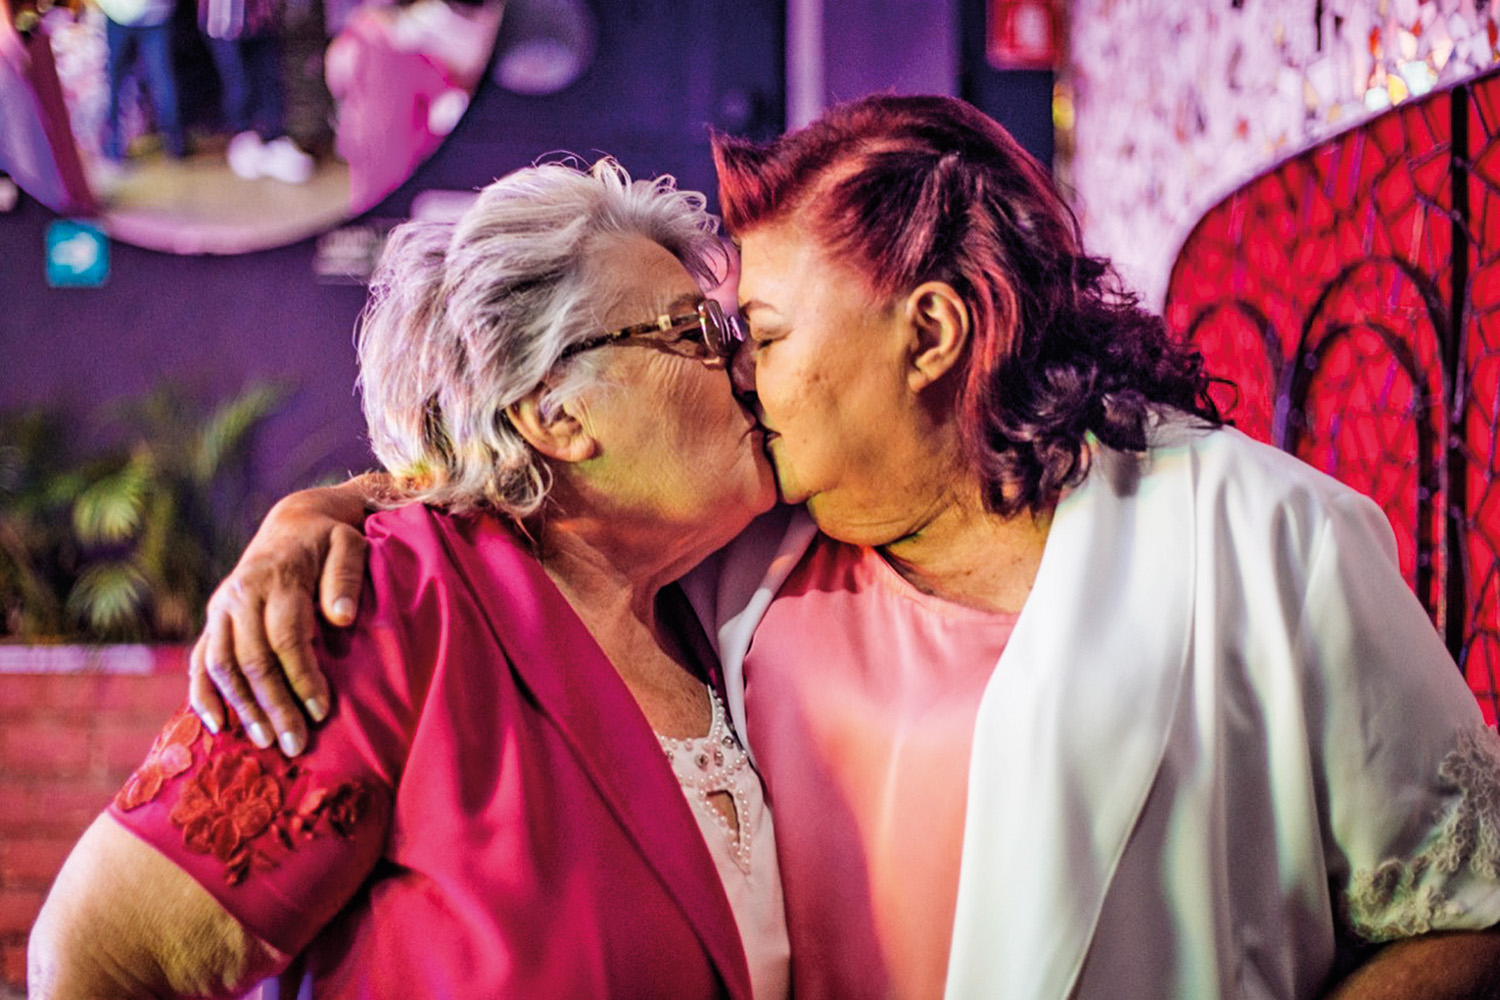 DA ARTE PARA A VIDA - A enfermeira Ângela Fontes (à esq.), 69 anos, trocou os primeiros beijos com meninas na adolescência e vive com Wilman Rocha há 26 anos. Mas só assumiu a homossexualidade em público depois de ver um beijo lésbico na TV. -